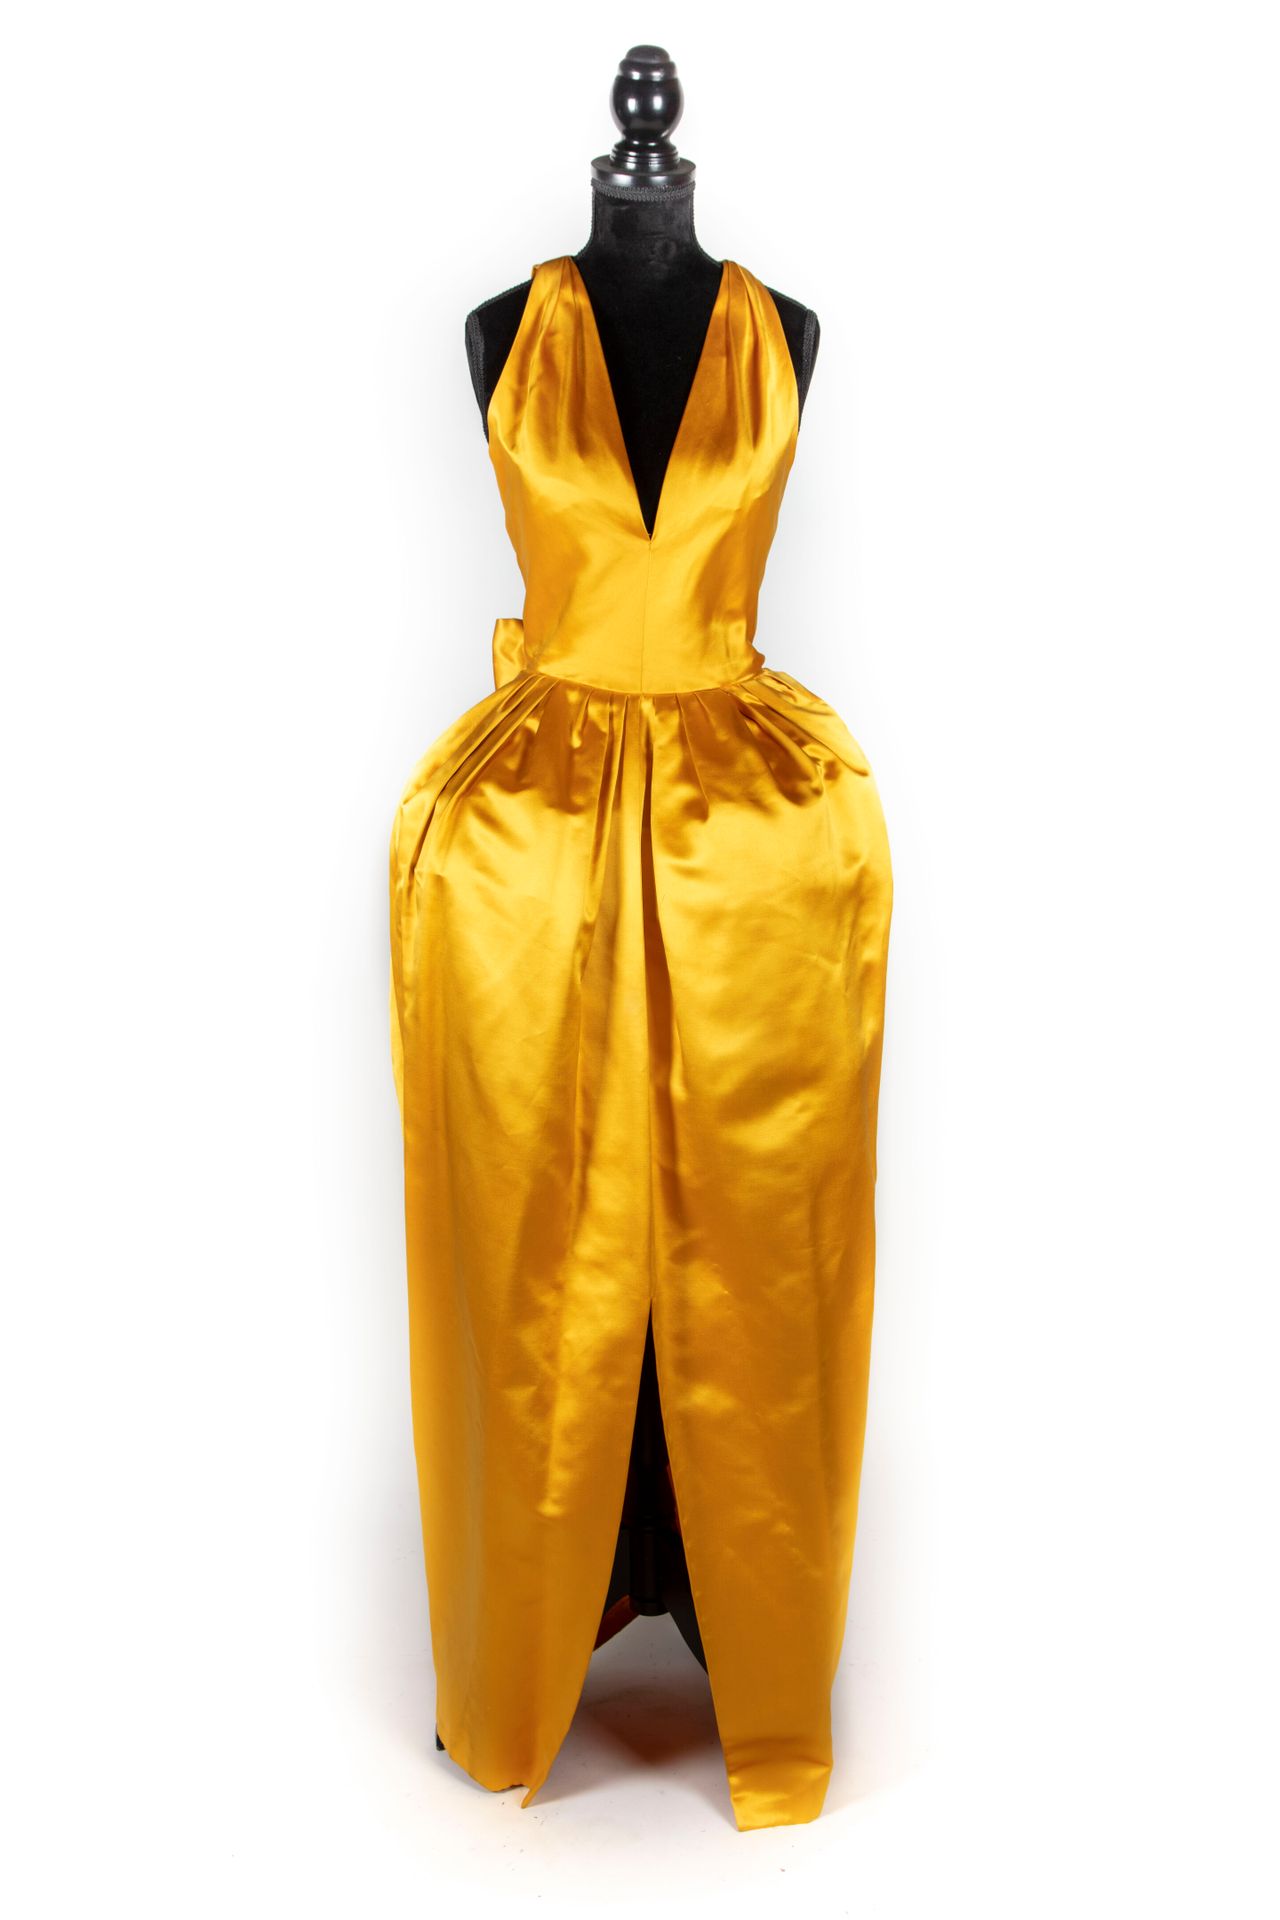 DIOR Christian DIOR - Parigi

Collezione Haute Couture - Autunno-Inverno 1979

A&hellip;